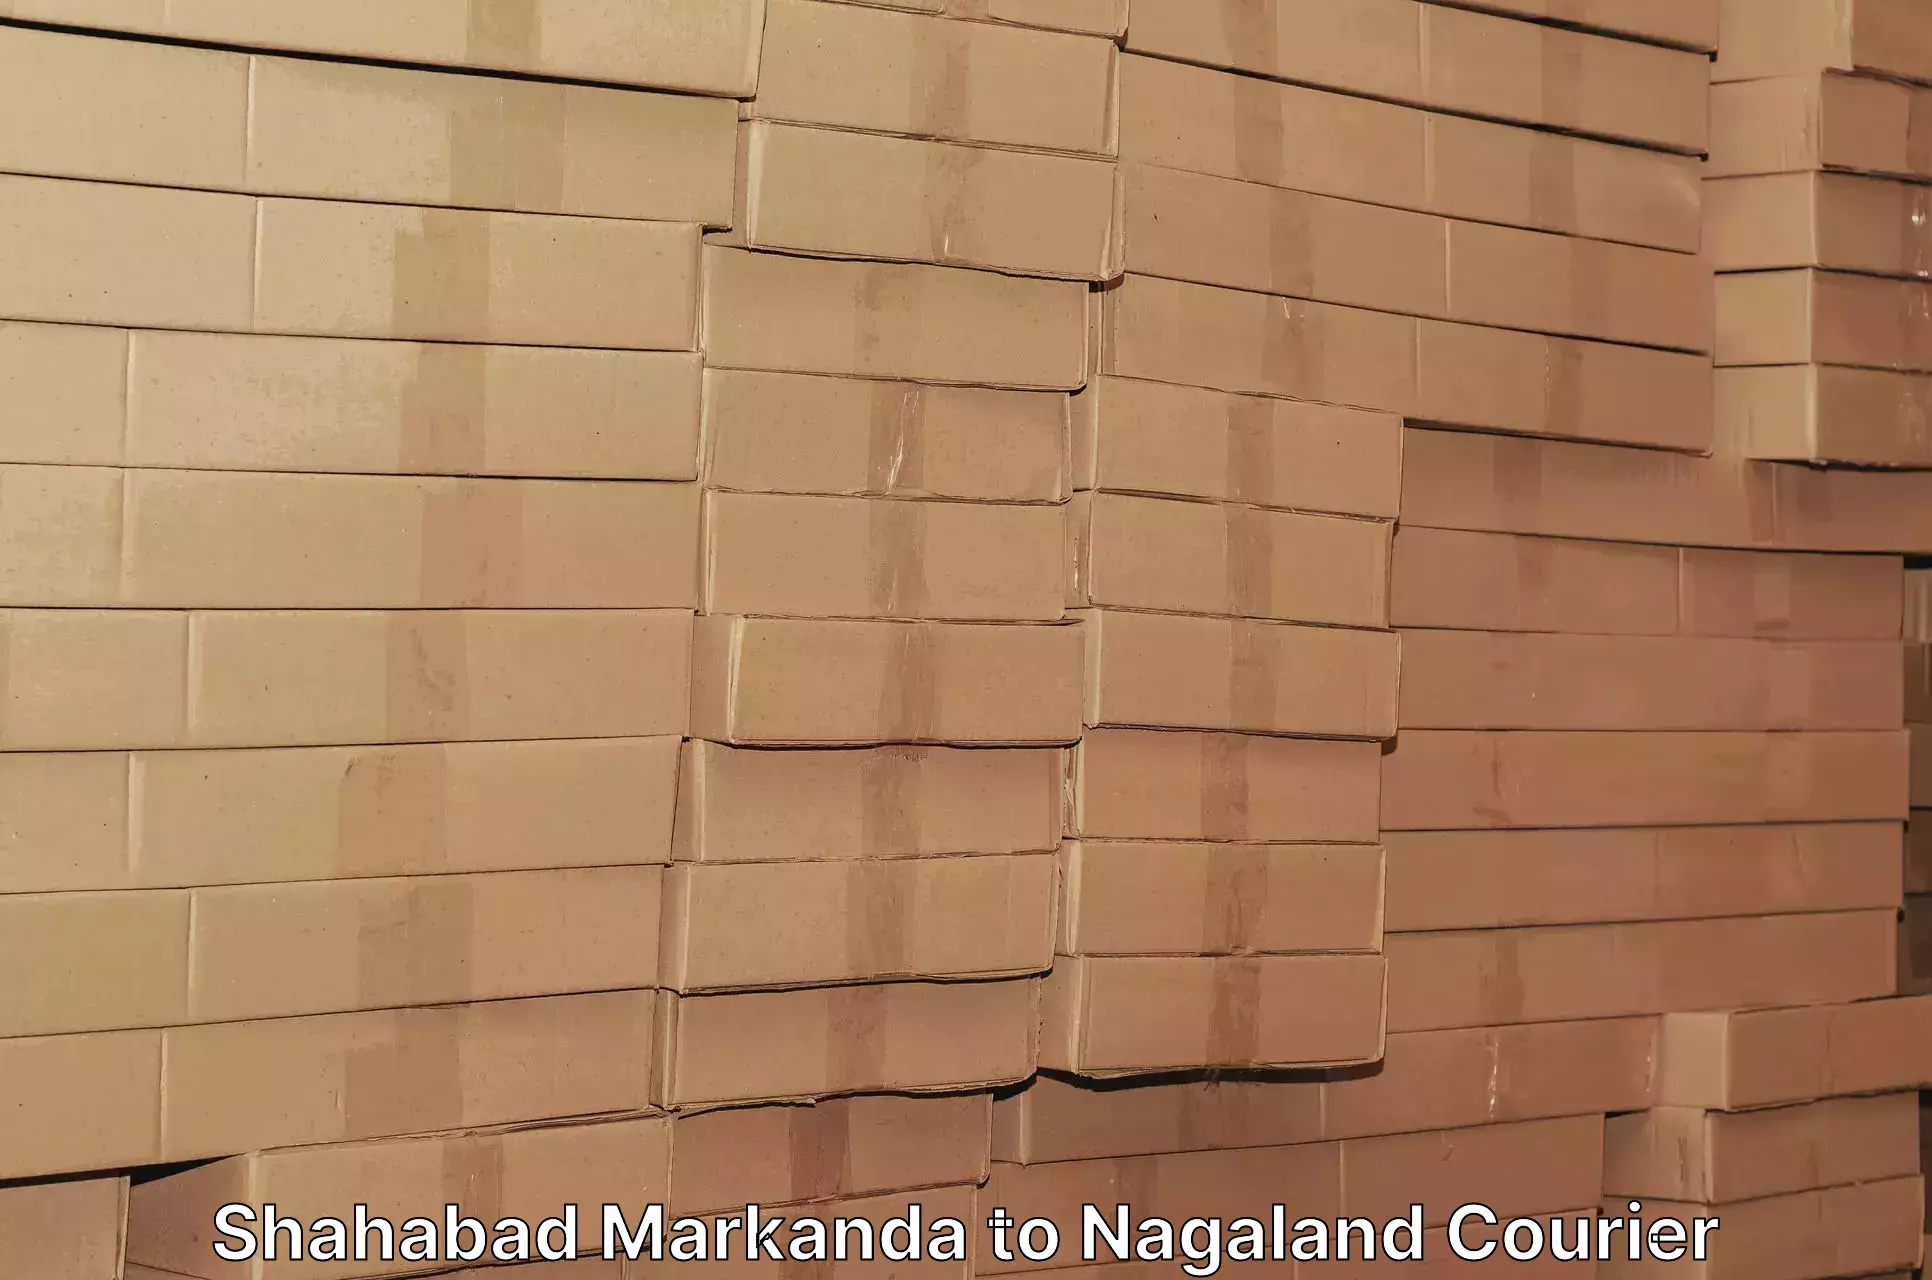 User-friendly courier app Shahabad Markanda to Nagaland